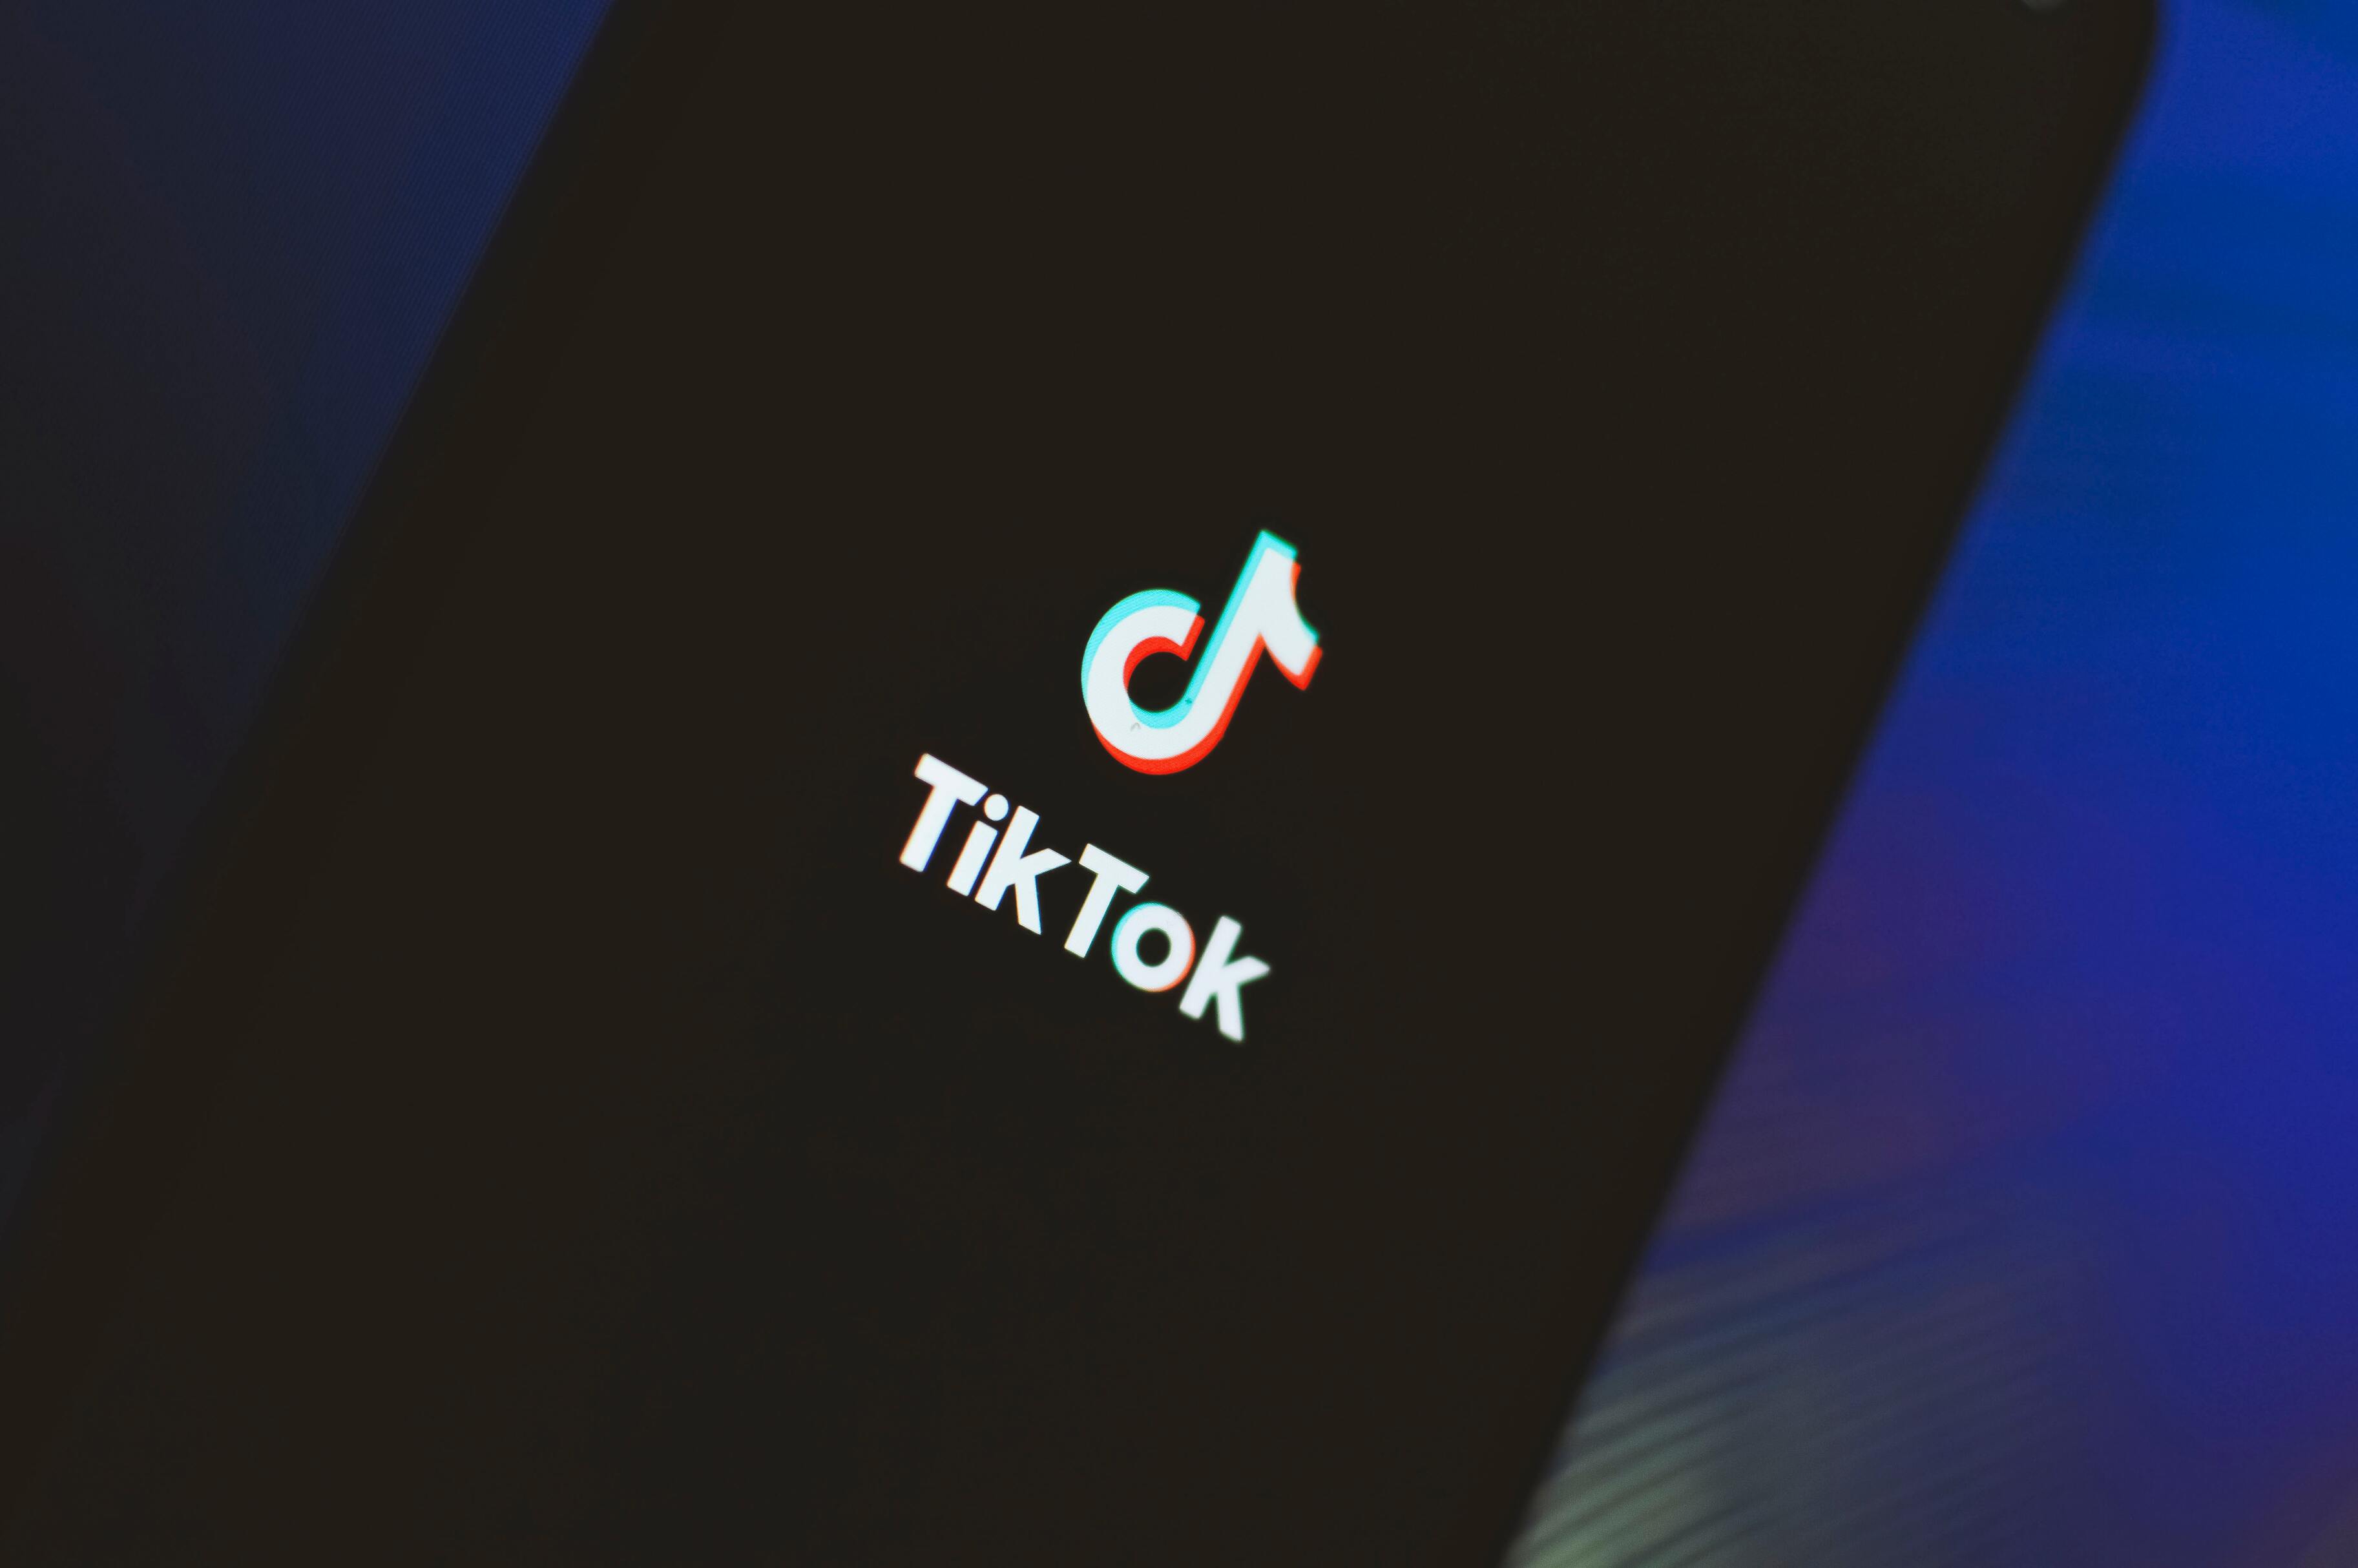 Европа оштрафовала TikTok за нарушение работы с данными детей